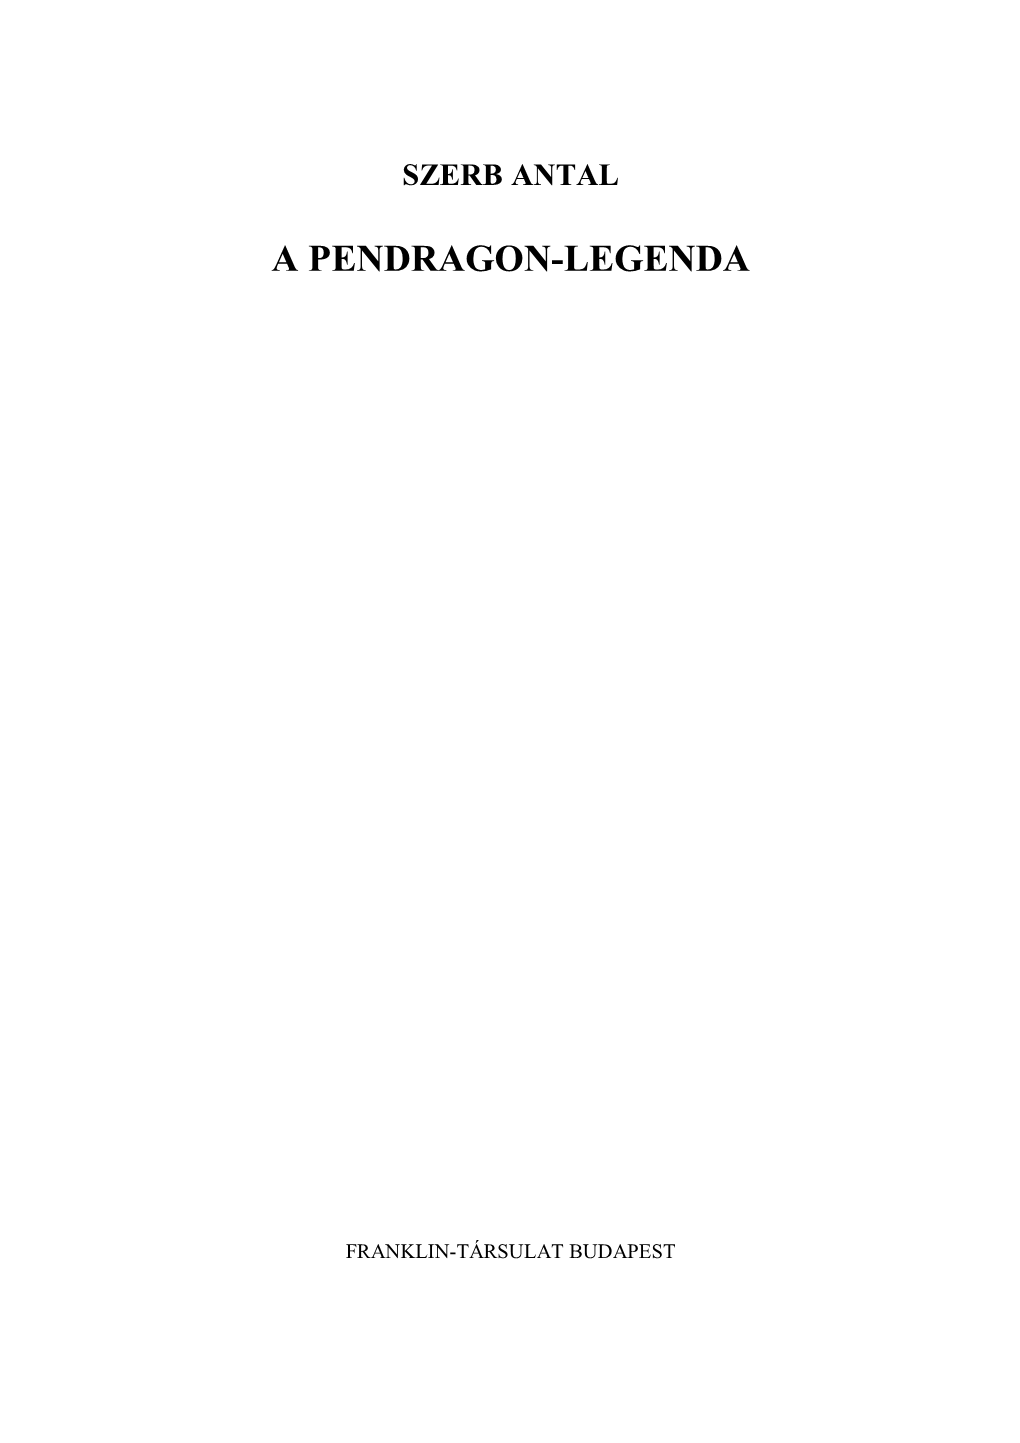 A Pendragon-Legenda